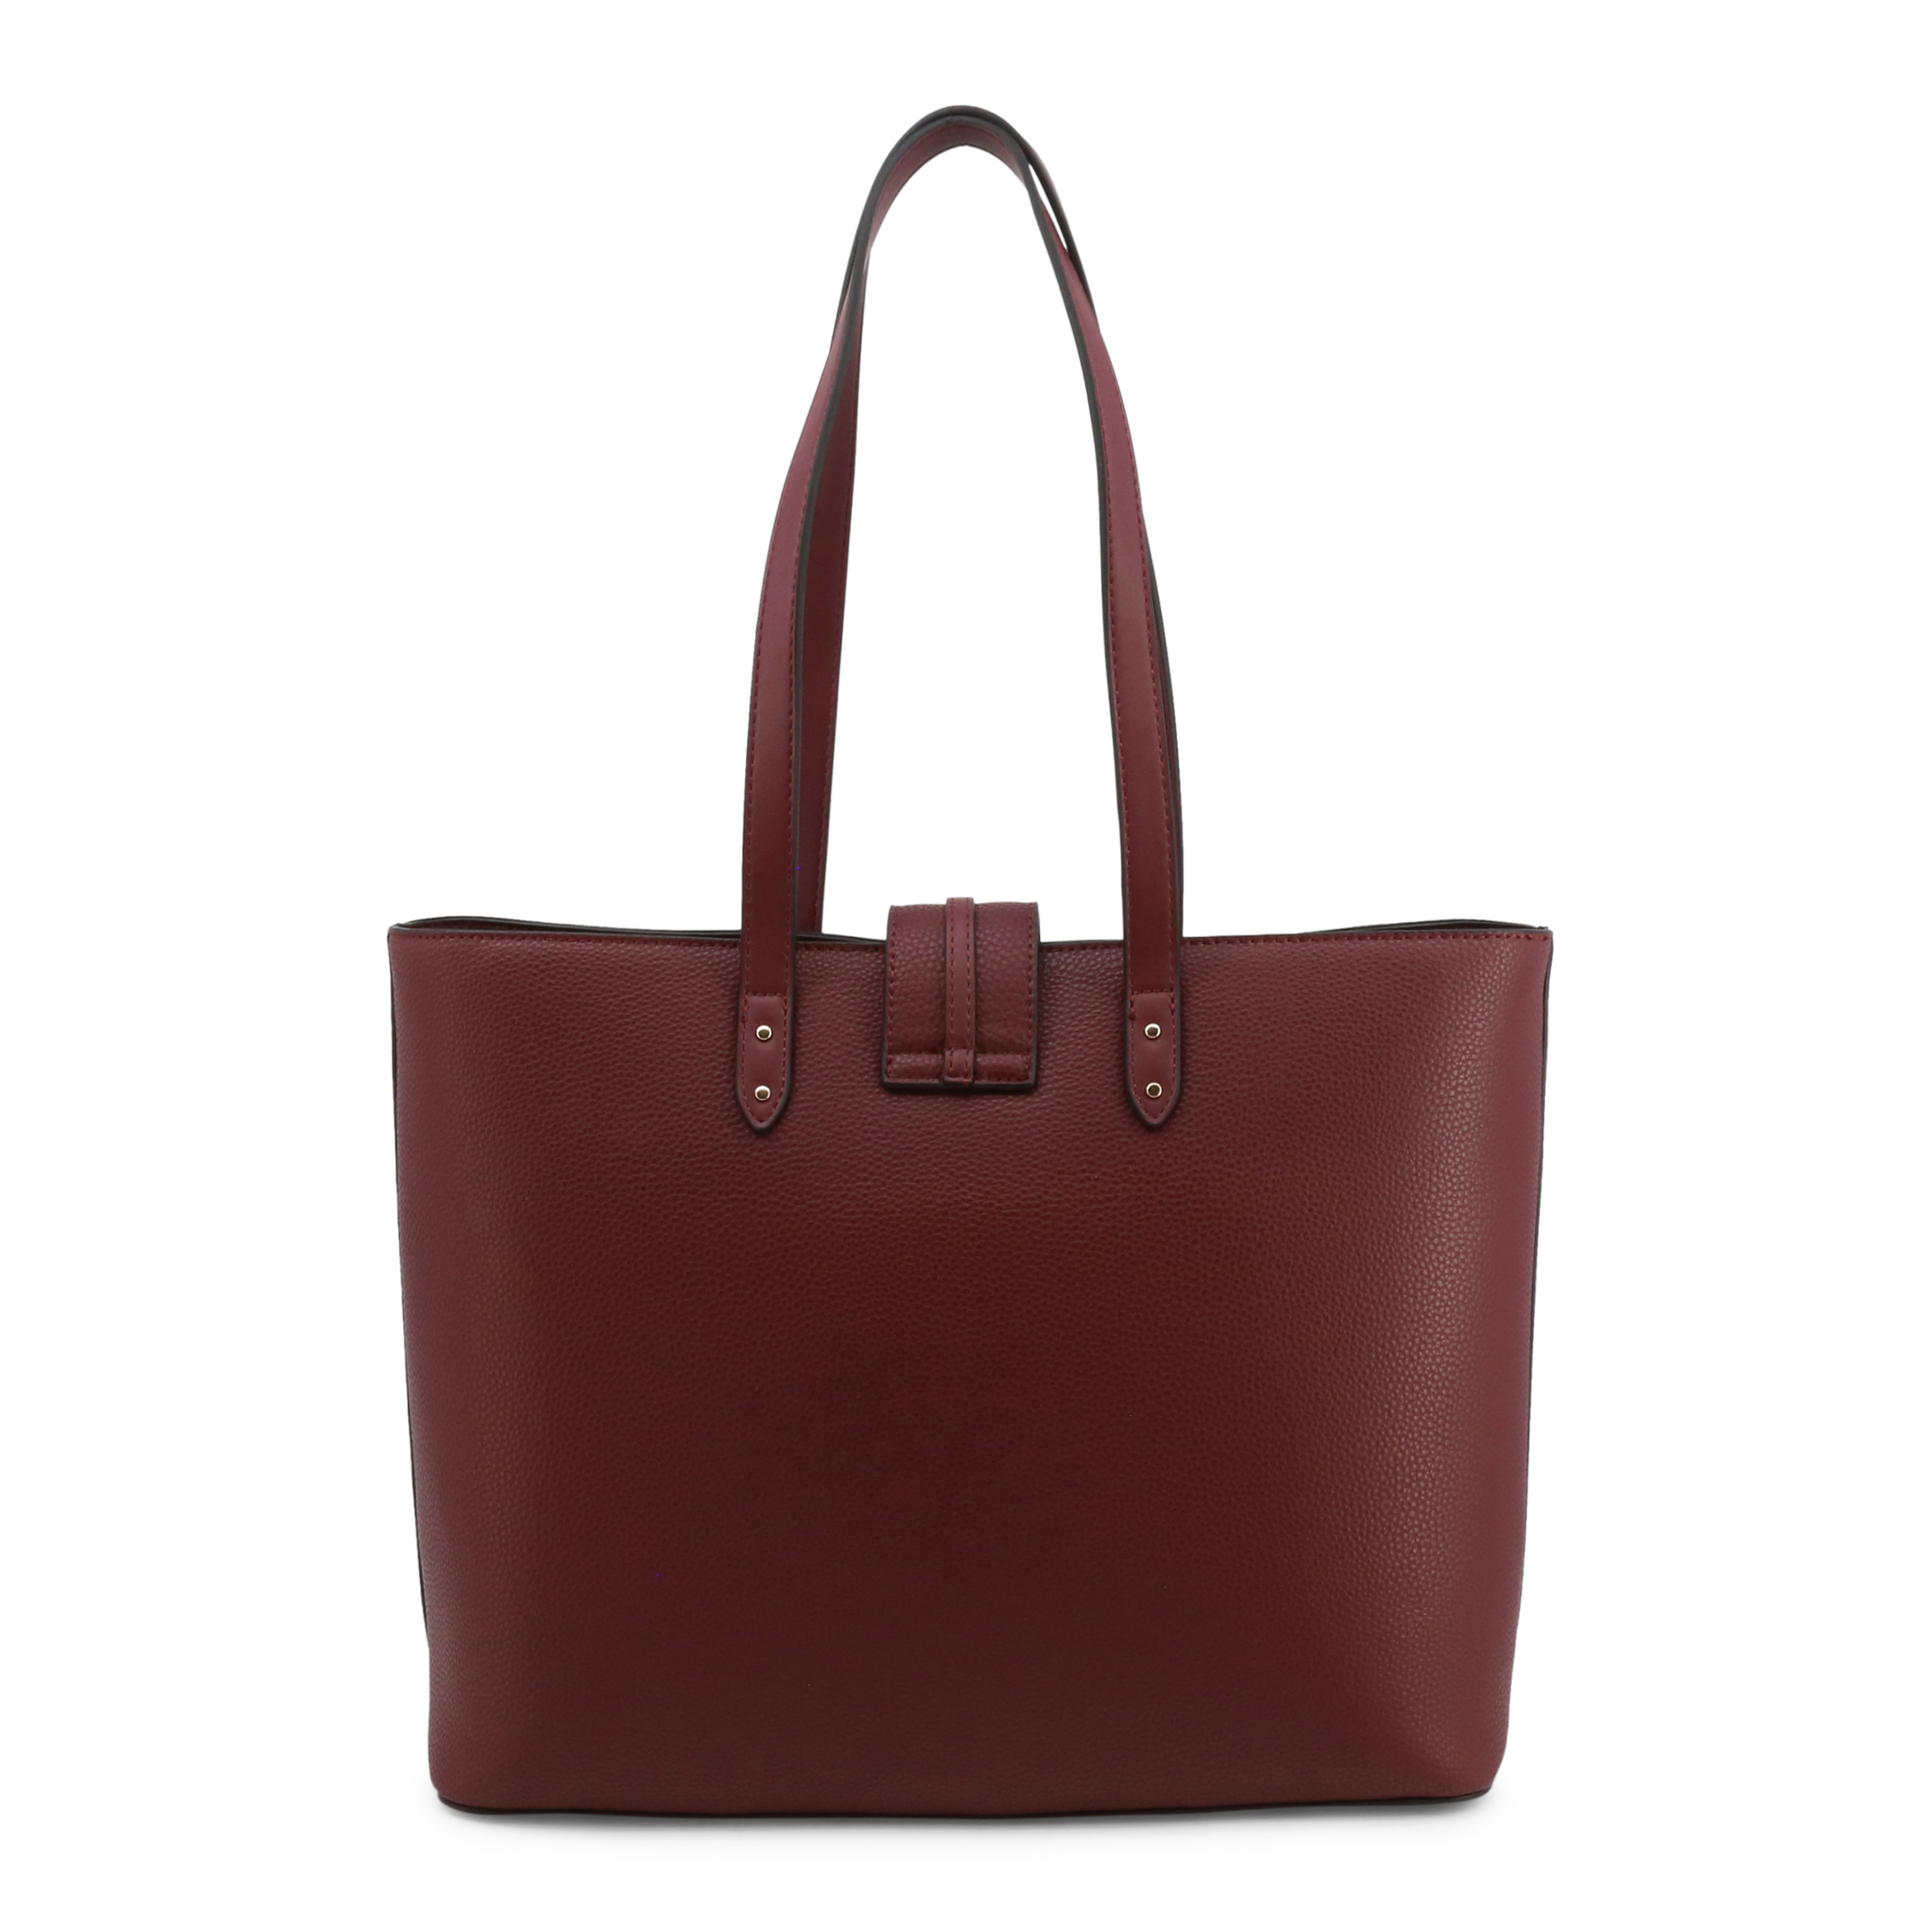 Liu Jo Red Shopping bags for Women - NF2035-E0086